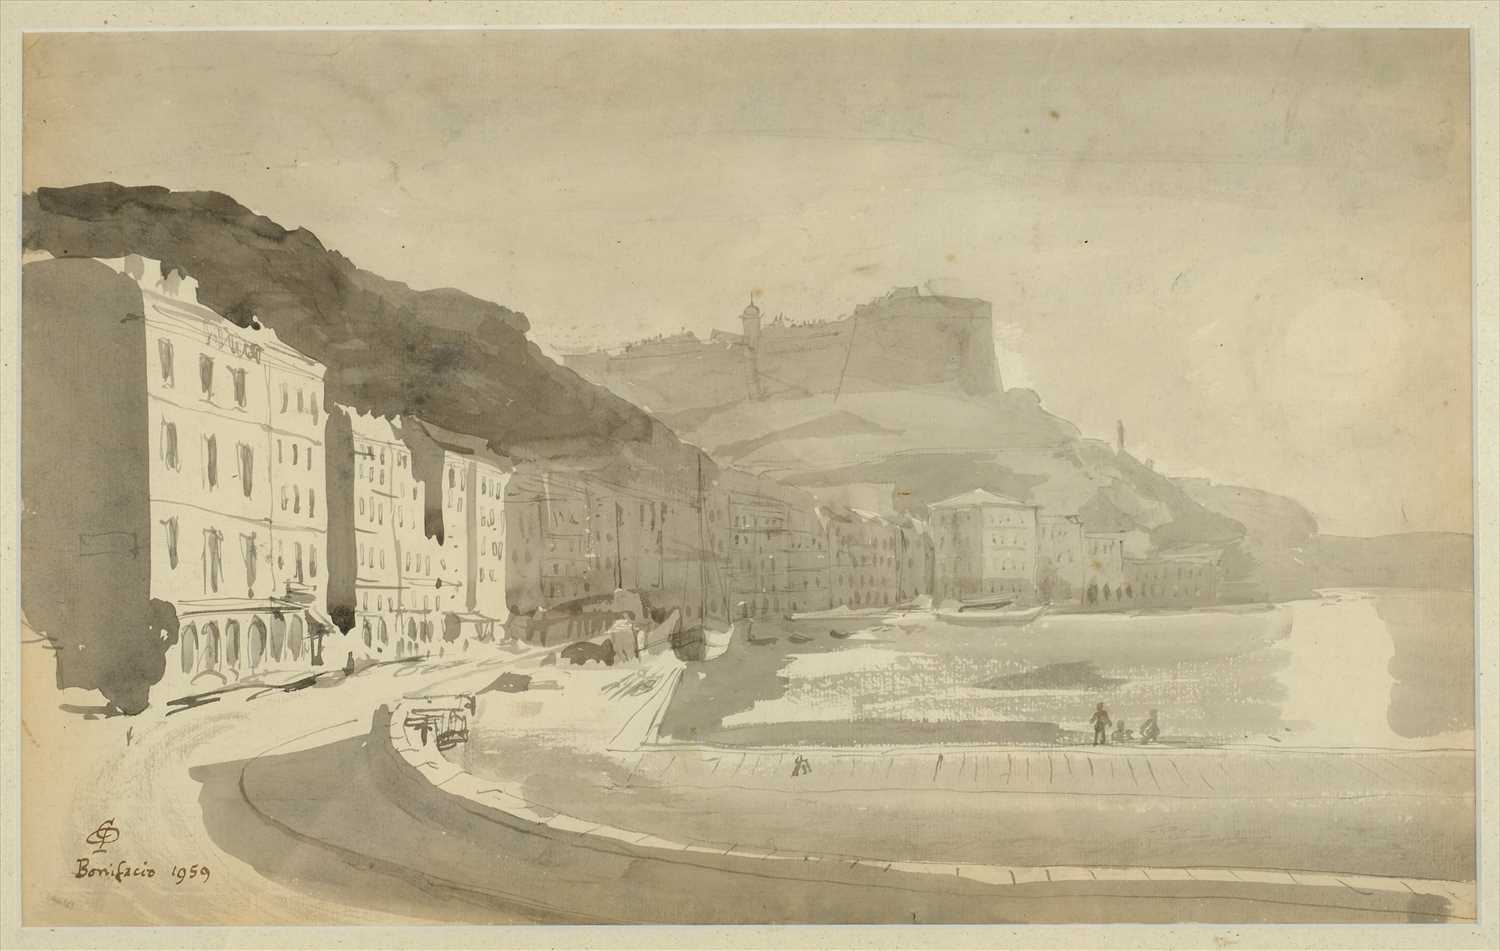 Lot 33 - Corsica. View of Bonifacio, 1959